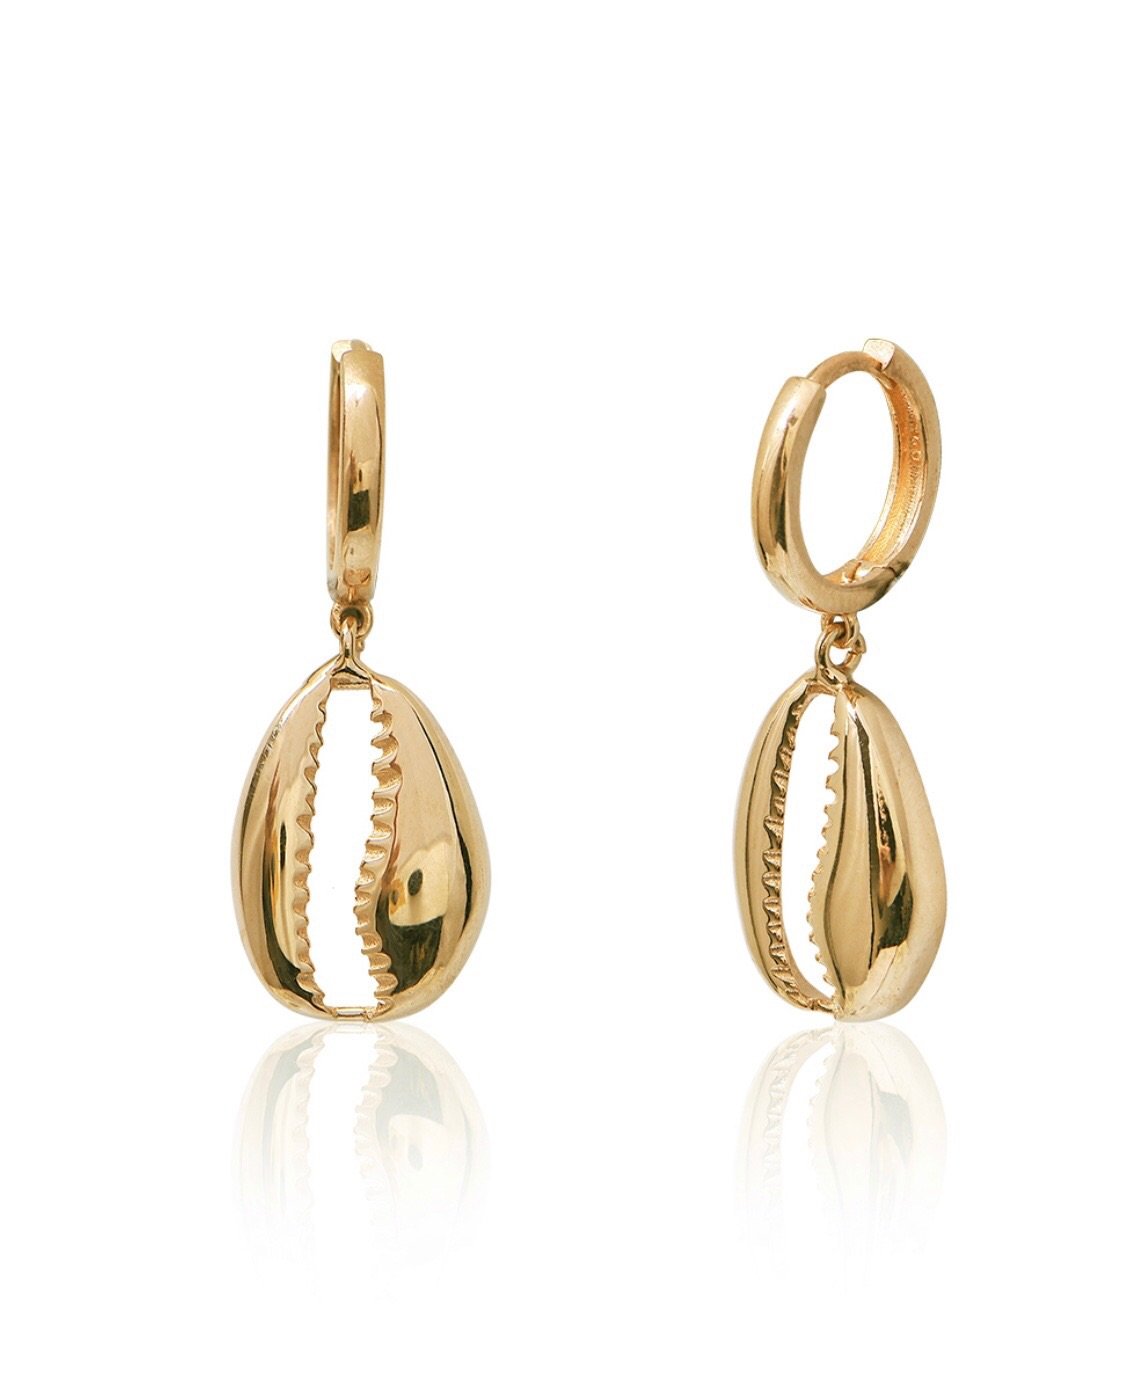 Sea shell gold earrings to wear on honeymoon